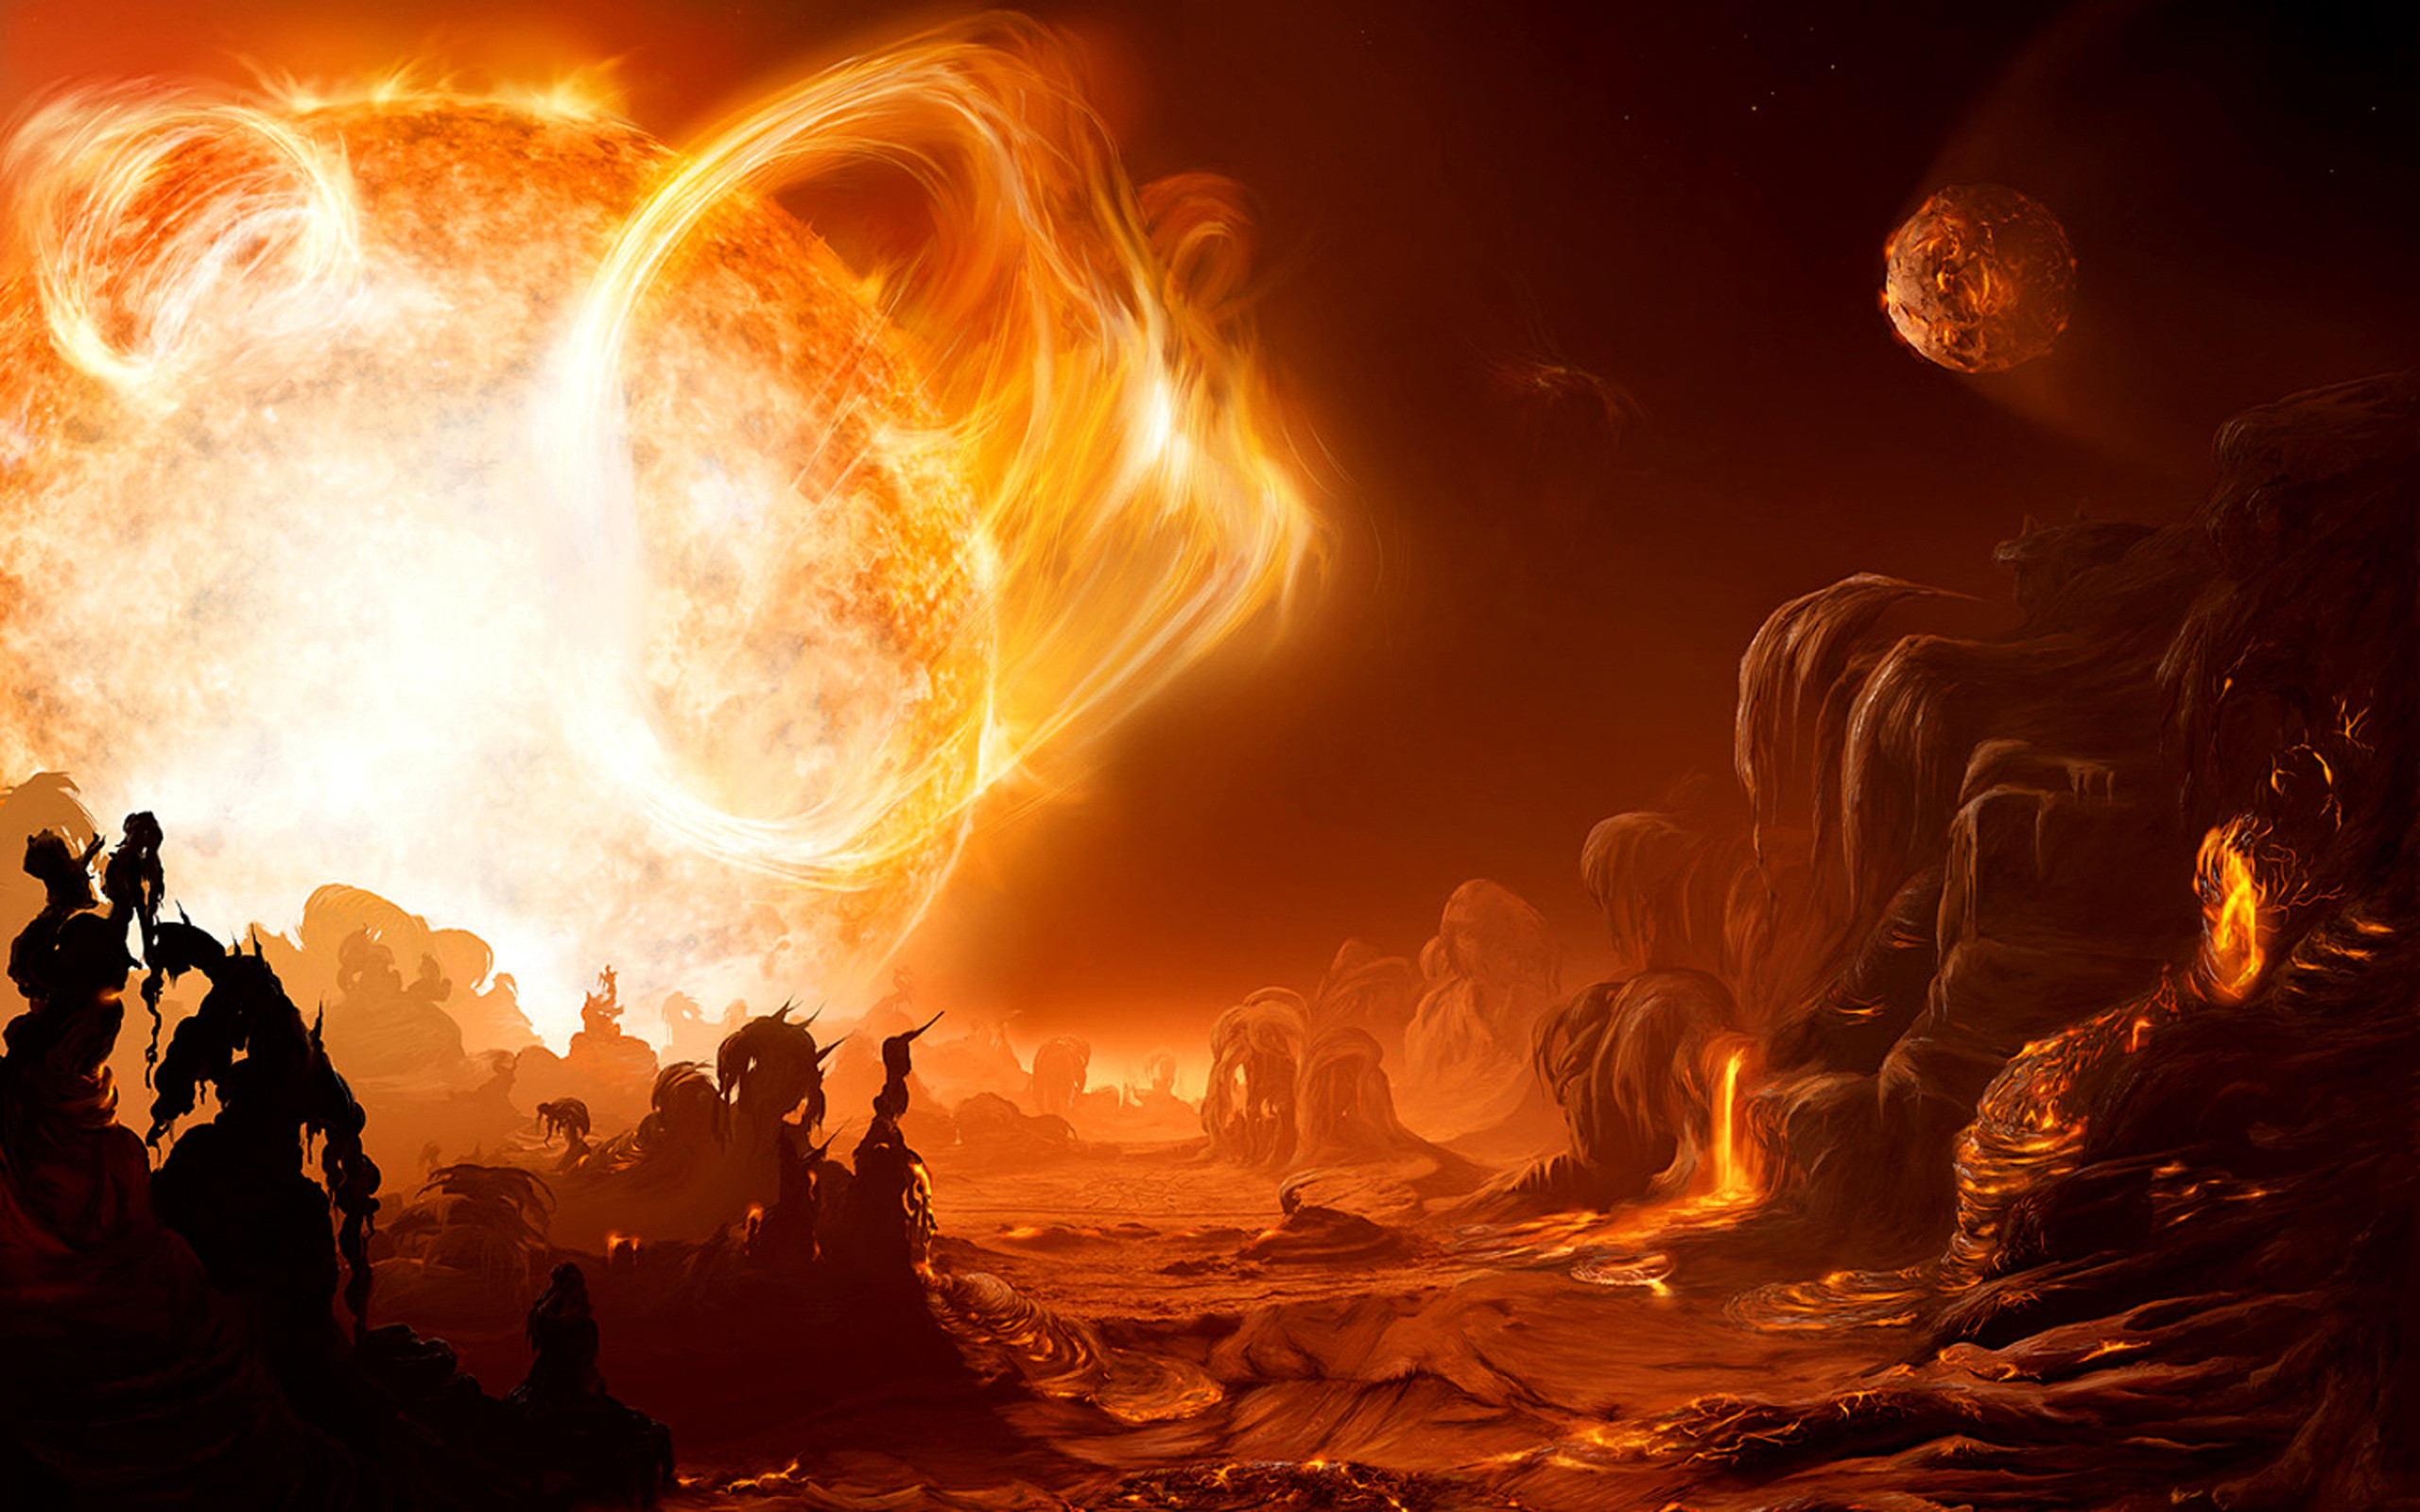 sci fi science fiction alien landscape art artistic painting cg digital  landscapes fire flames sun hot